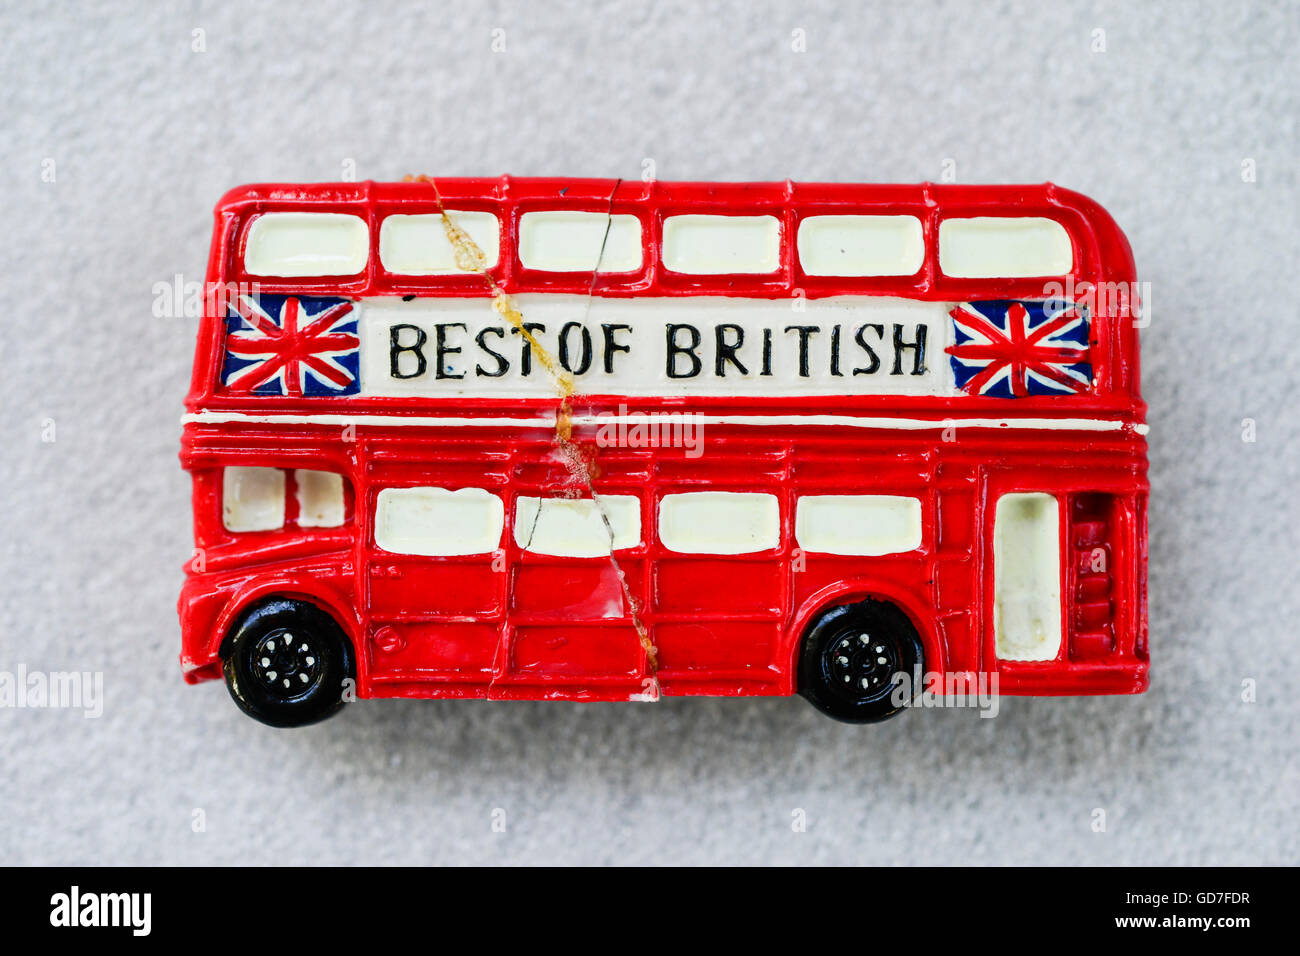 Royaume-uni, Angleterre, Londres, aimant frigo Souvenirs de Londres rouge double decker bus, première casse puis collés Banque D'Images